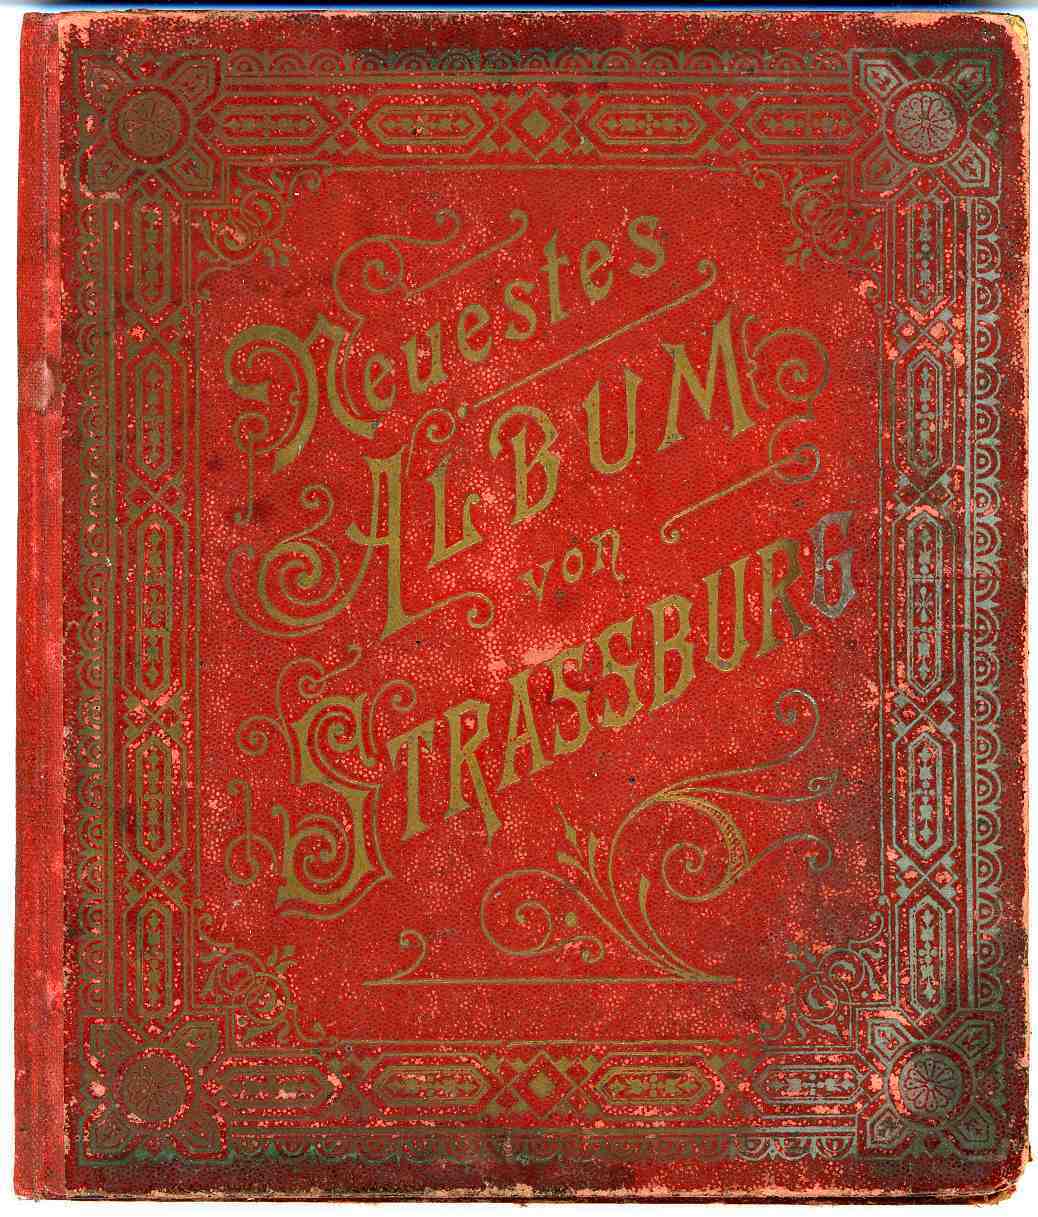 Rare Ancien Album Von STRASSBURG STRASBOURG 19 Eme Siecle - Alsace